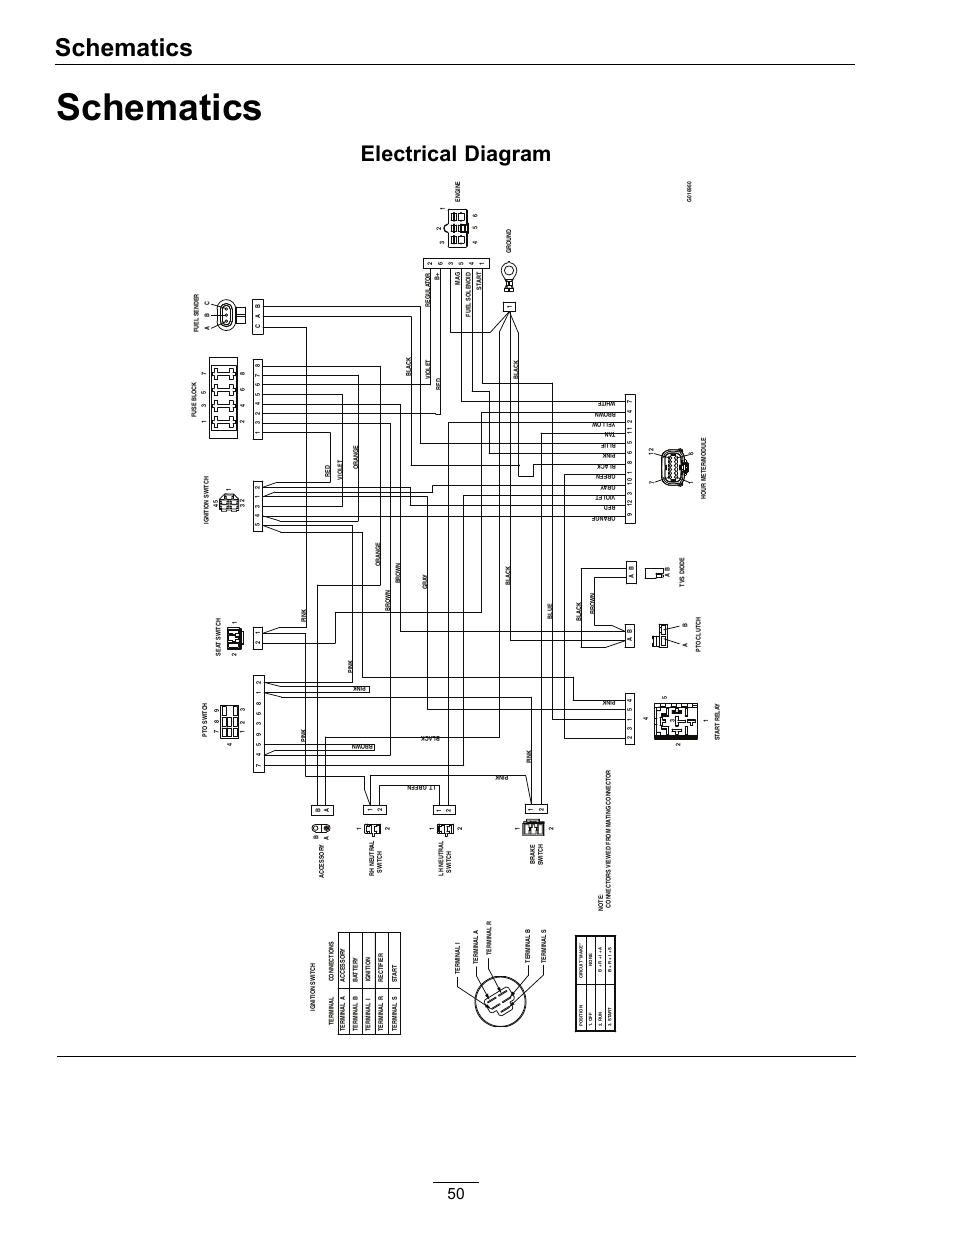 05 fxdc/i wiring diagram